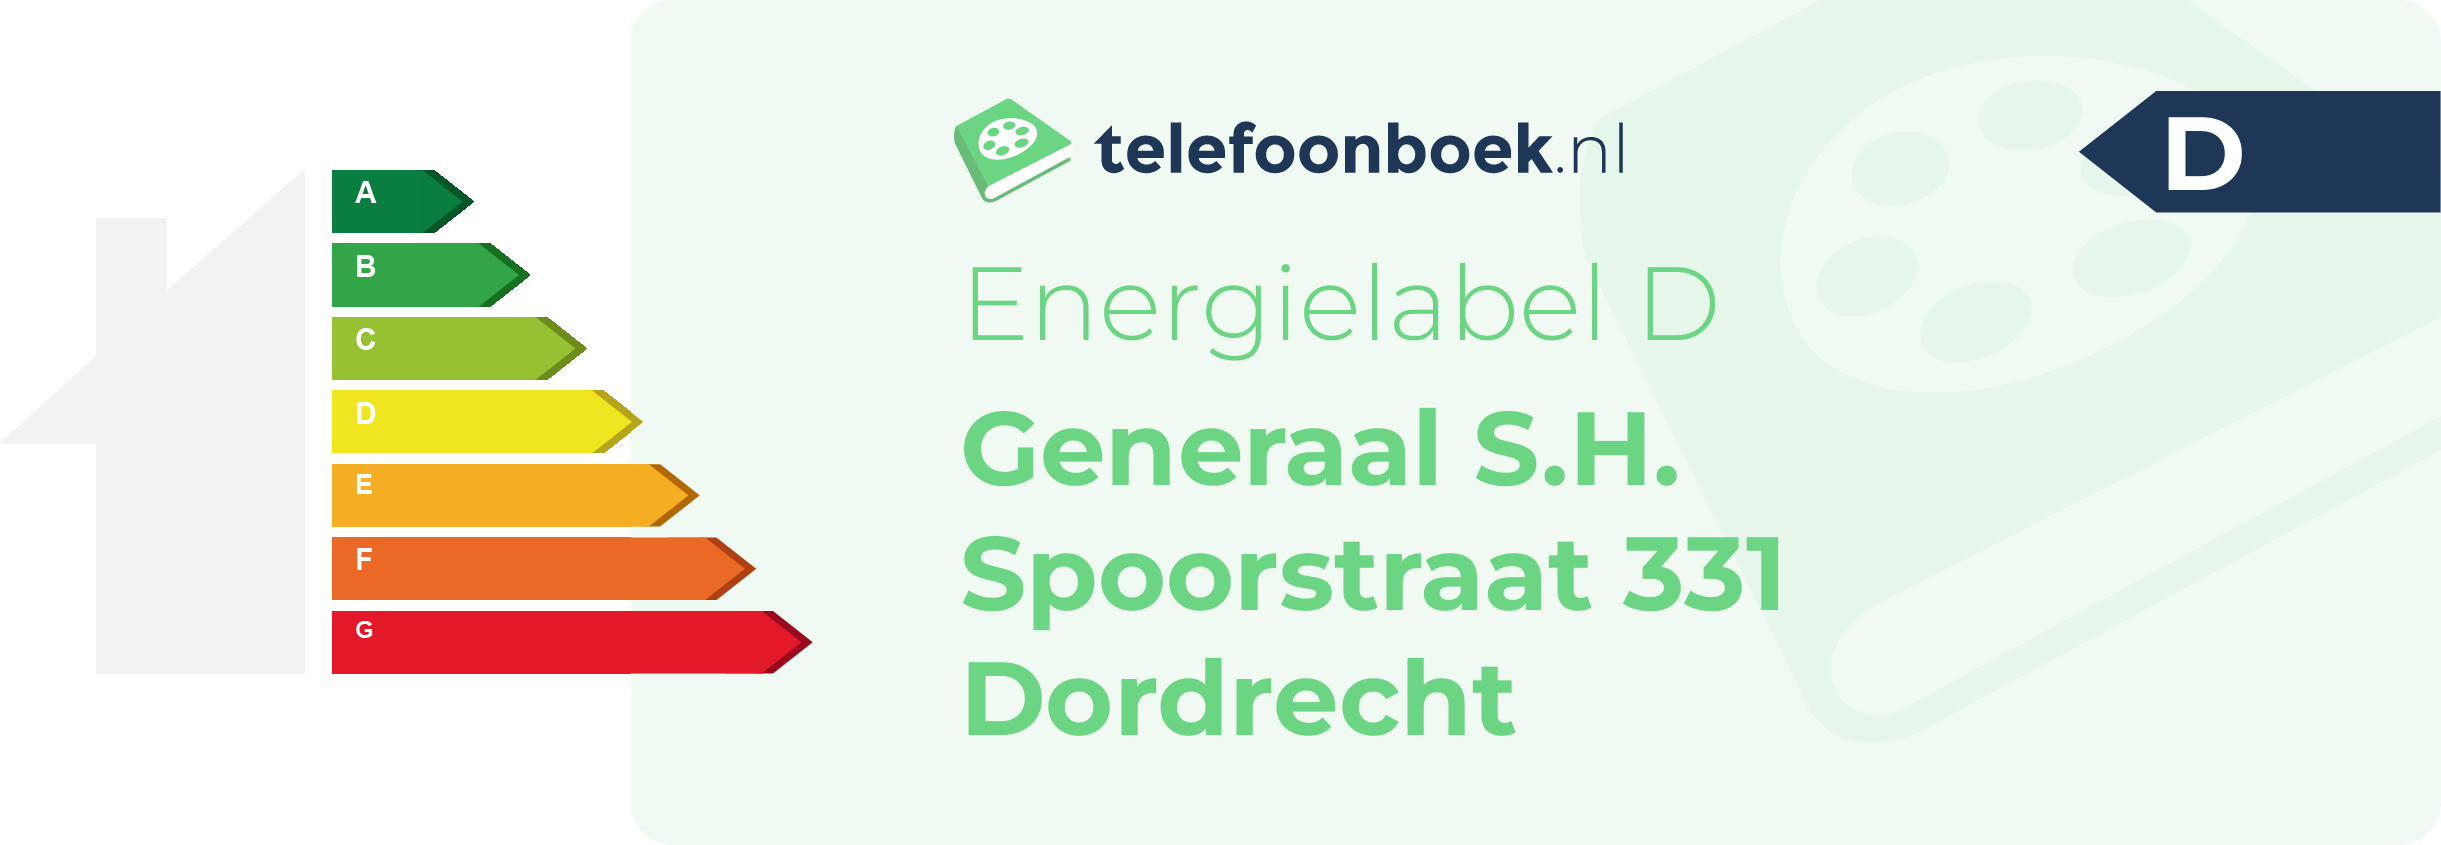 Energielabel Generaal S.H. Spoorstraat 331 Dordrecht